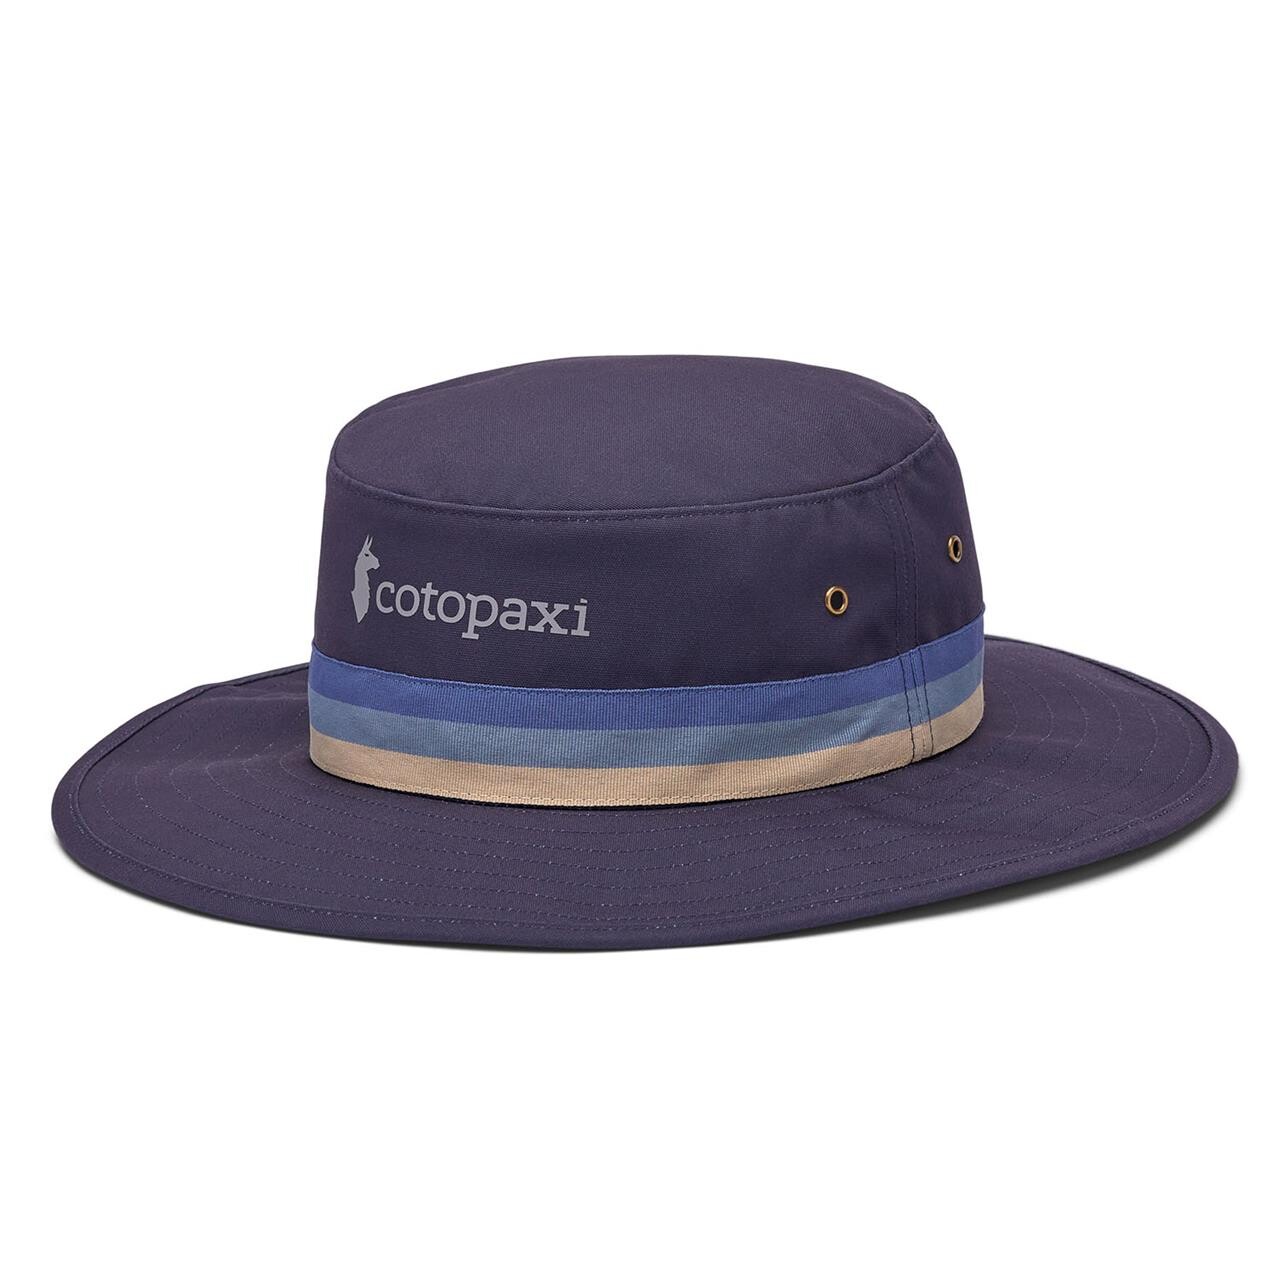 Cotopaxi Orilla Sun Hat (Grå (GRAPHITE) One size)